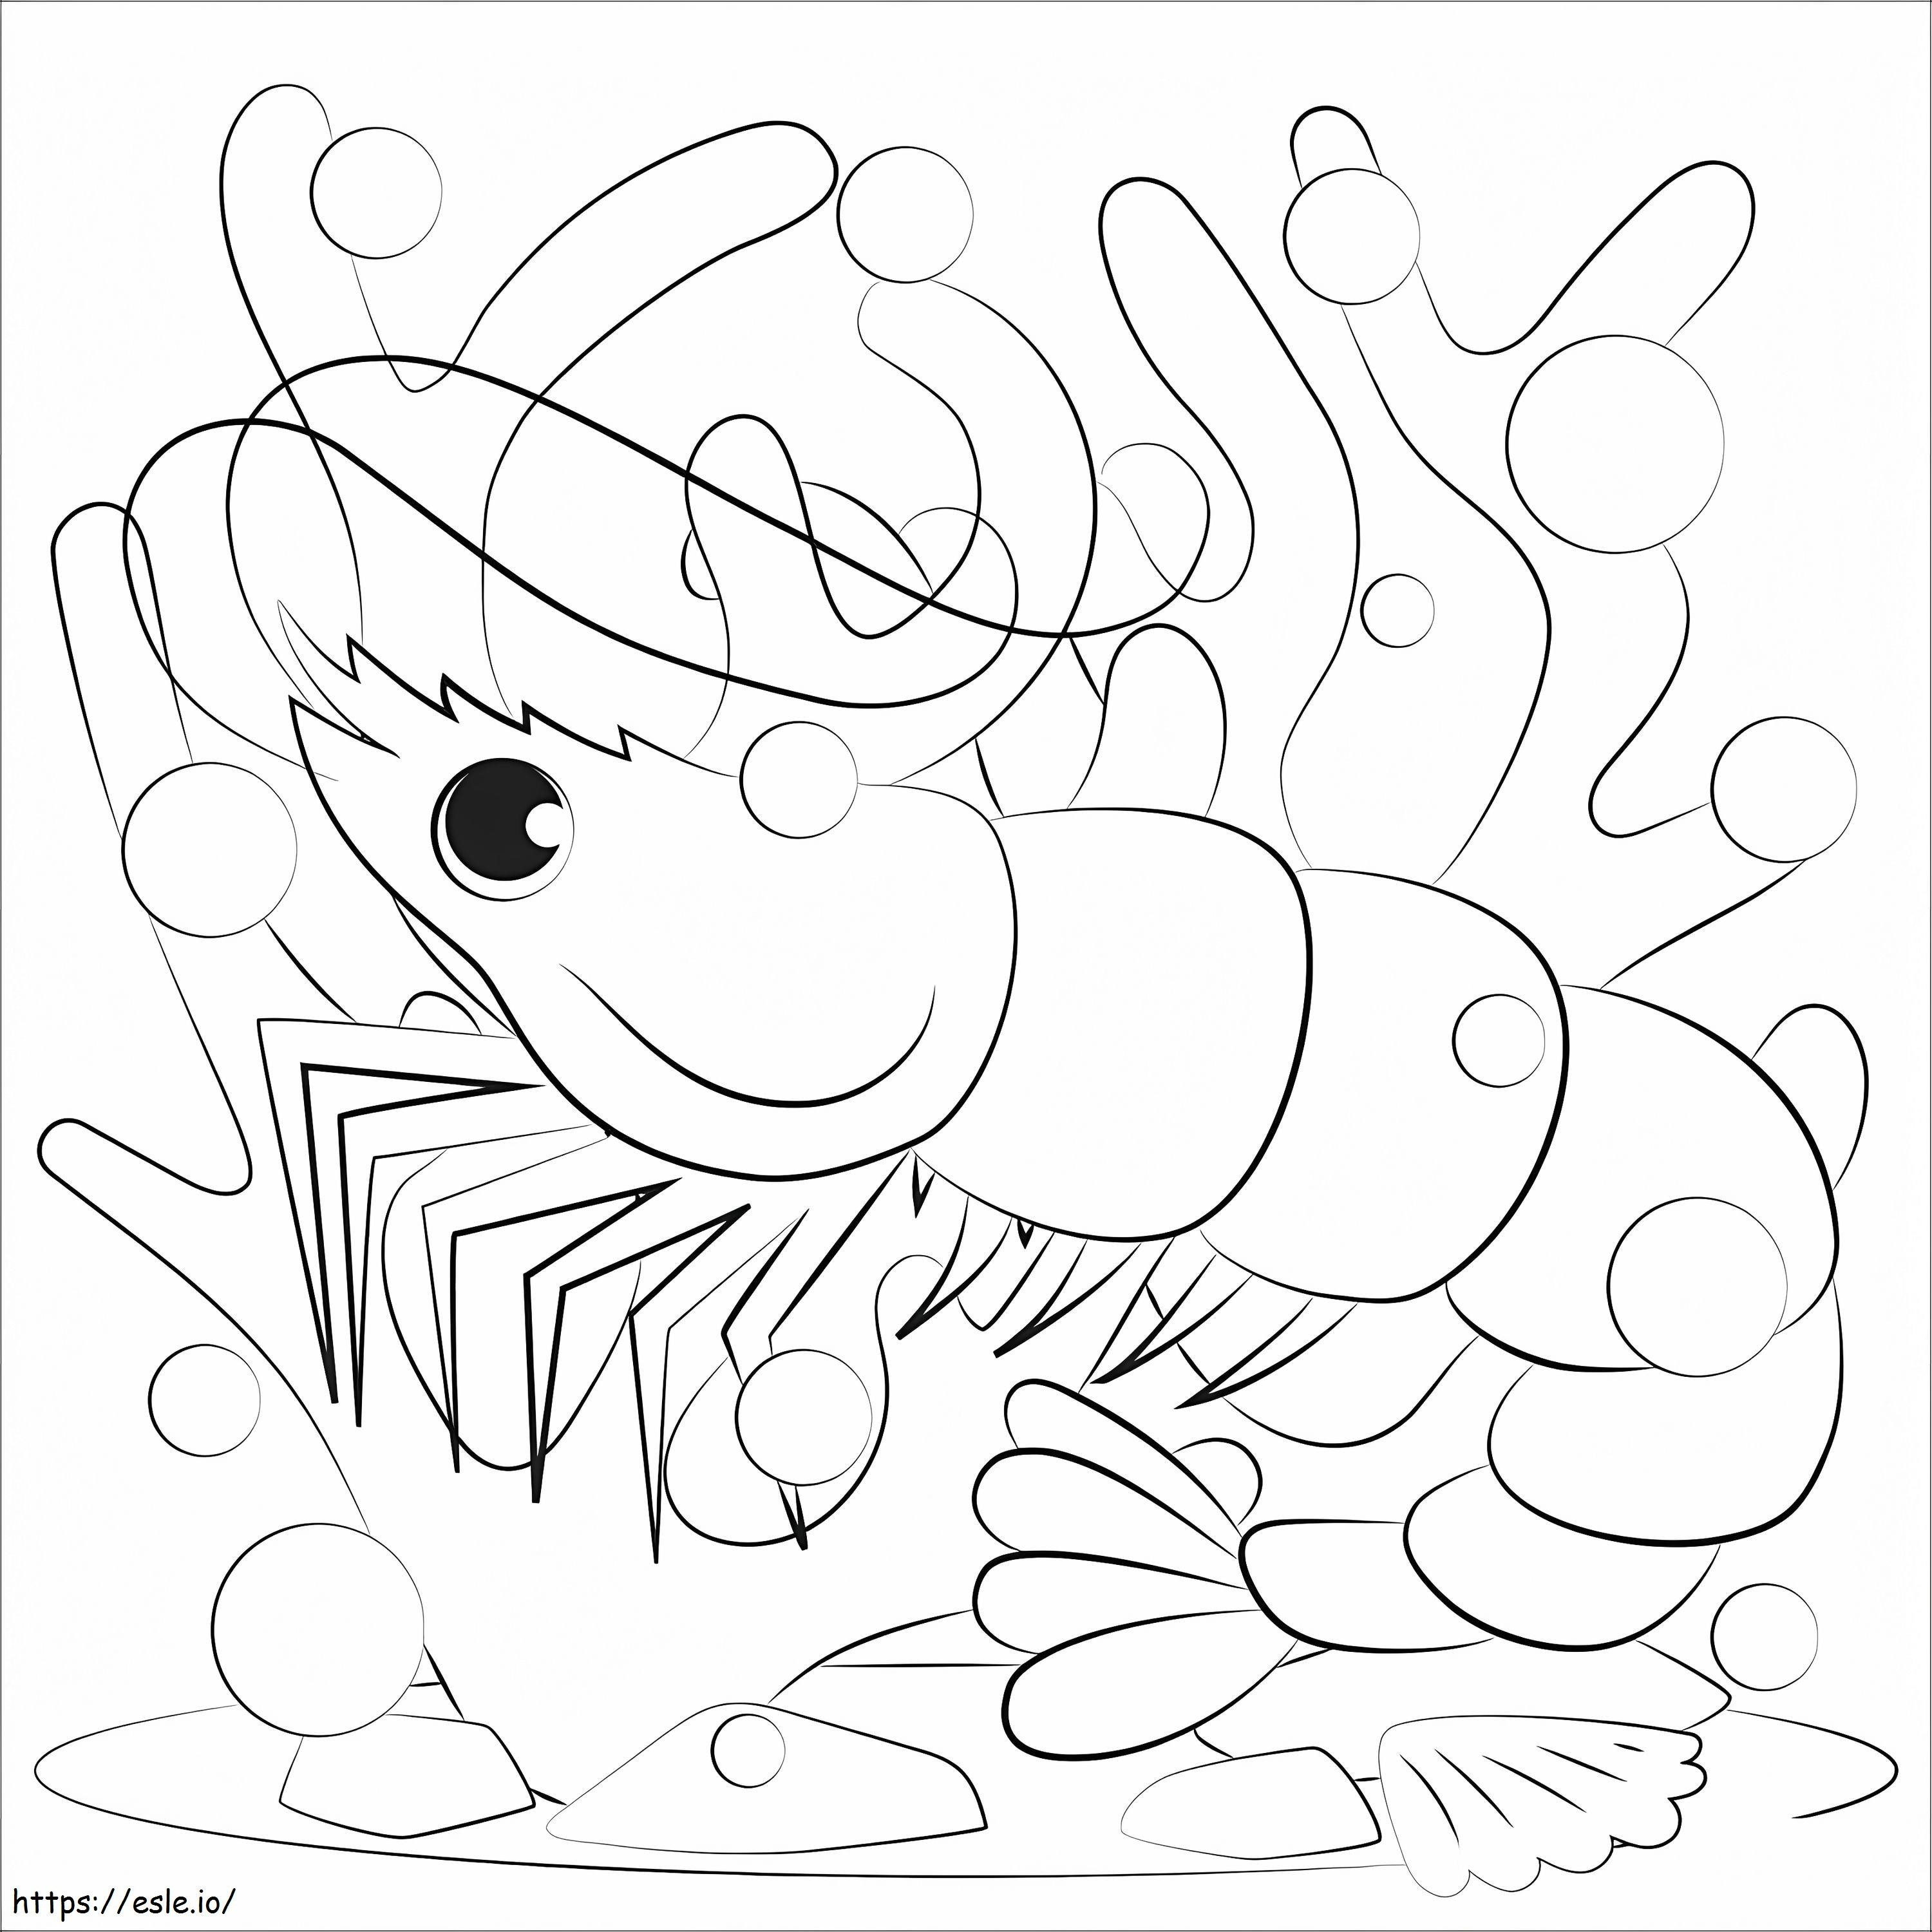 A Shrimp coloring page